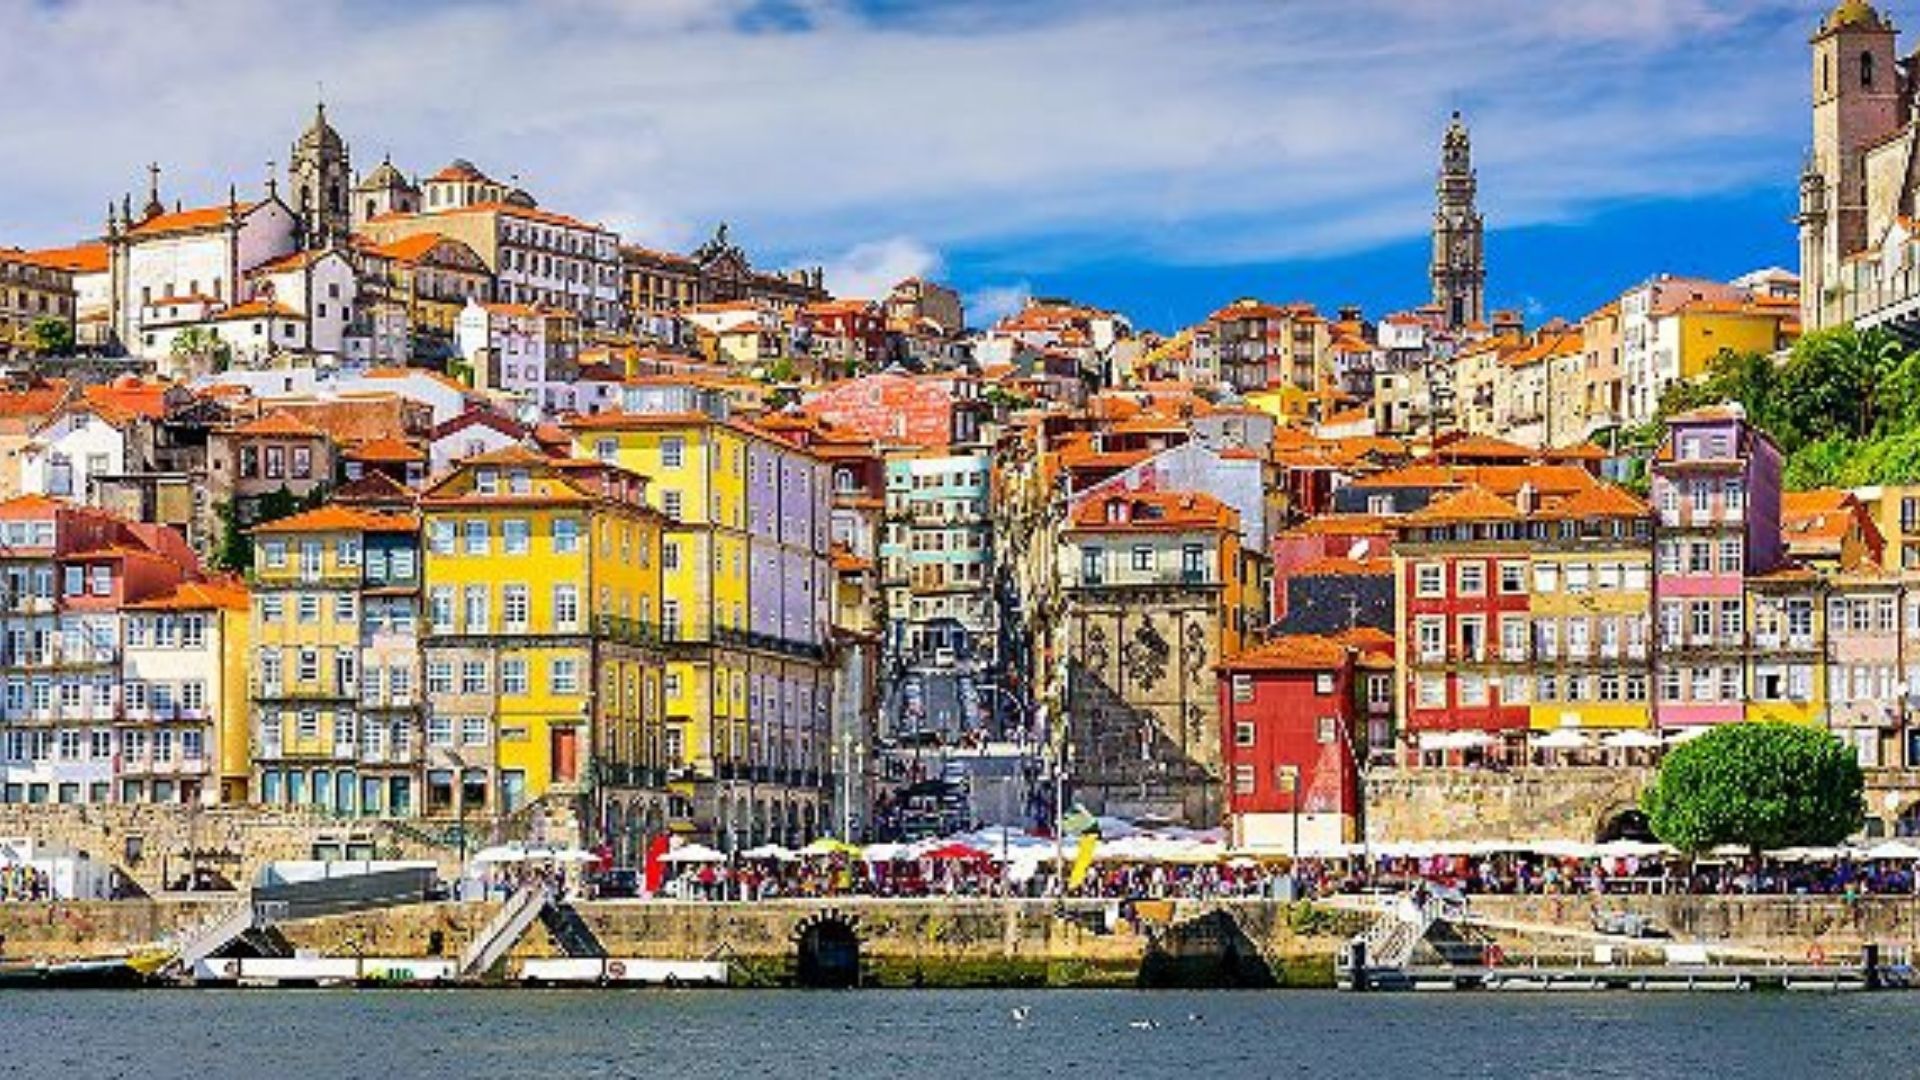 Oporto (Leixões), Portugal